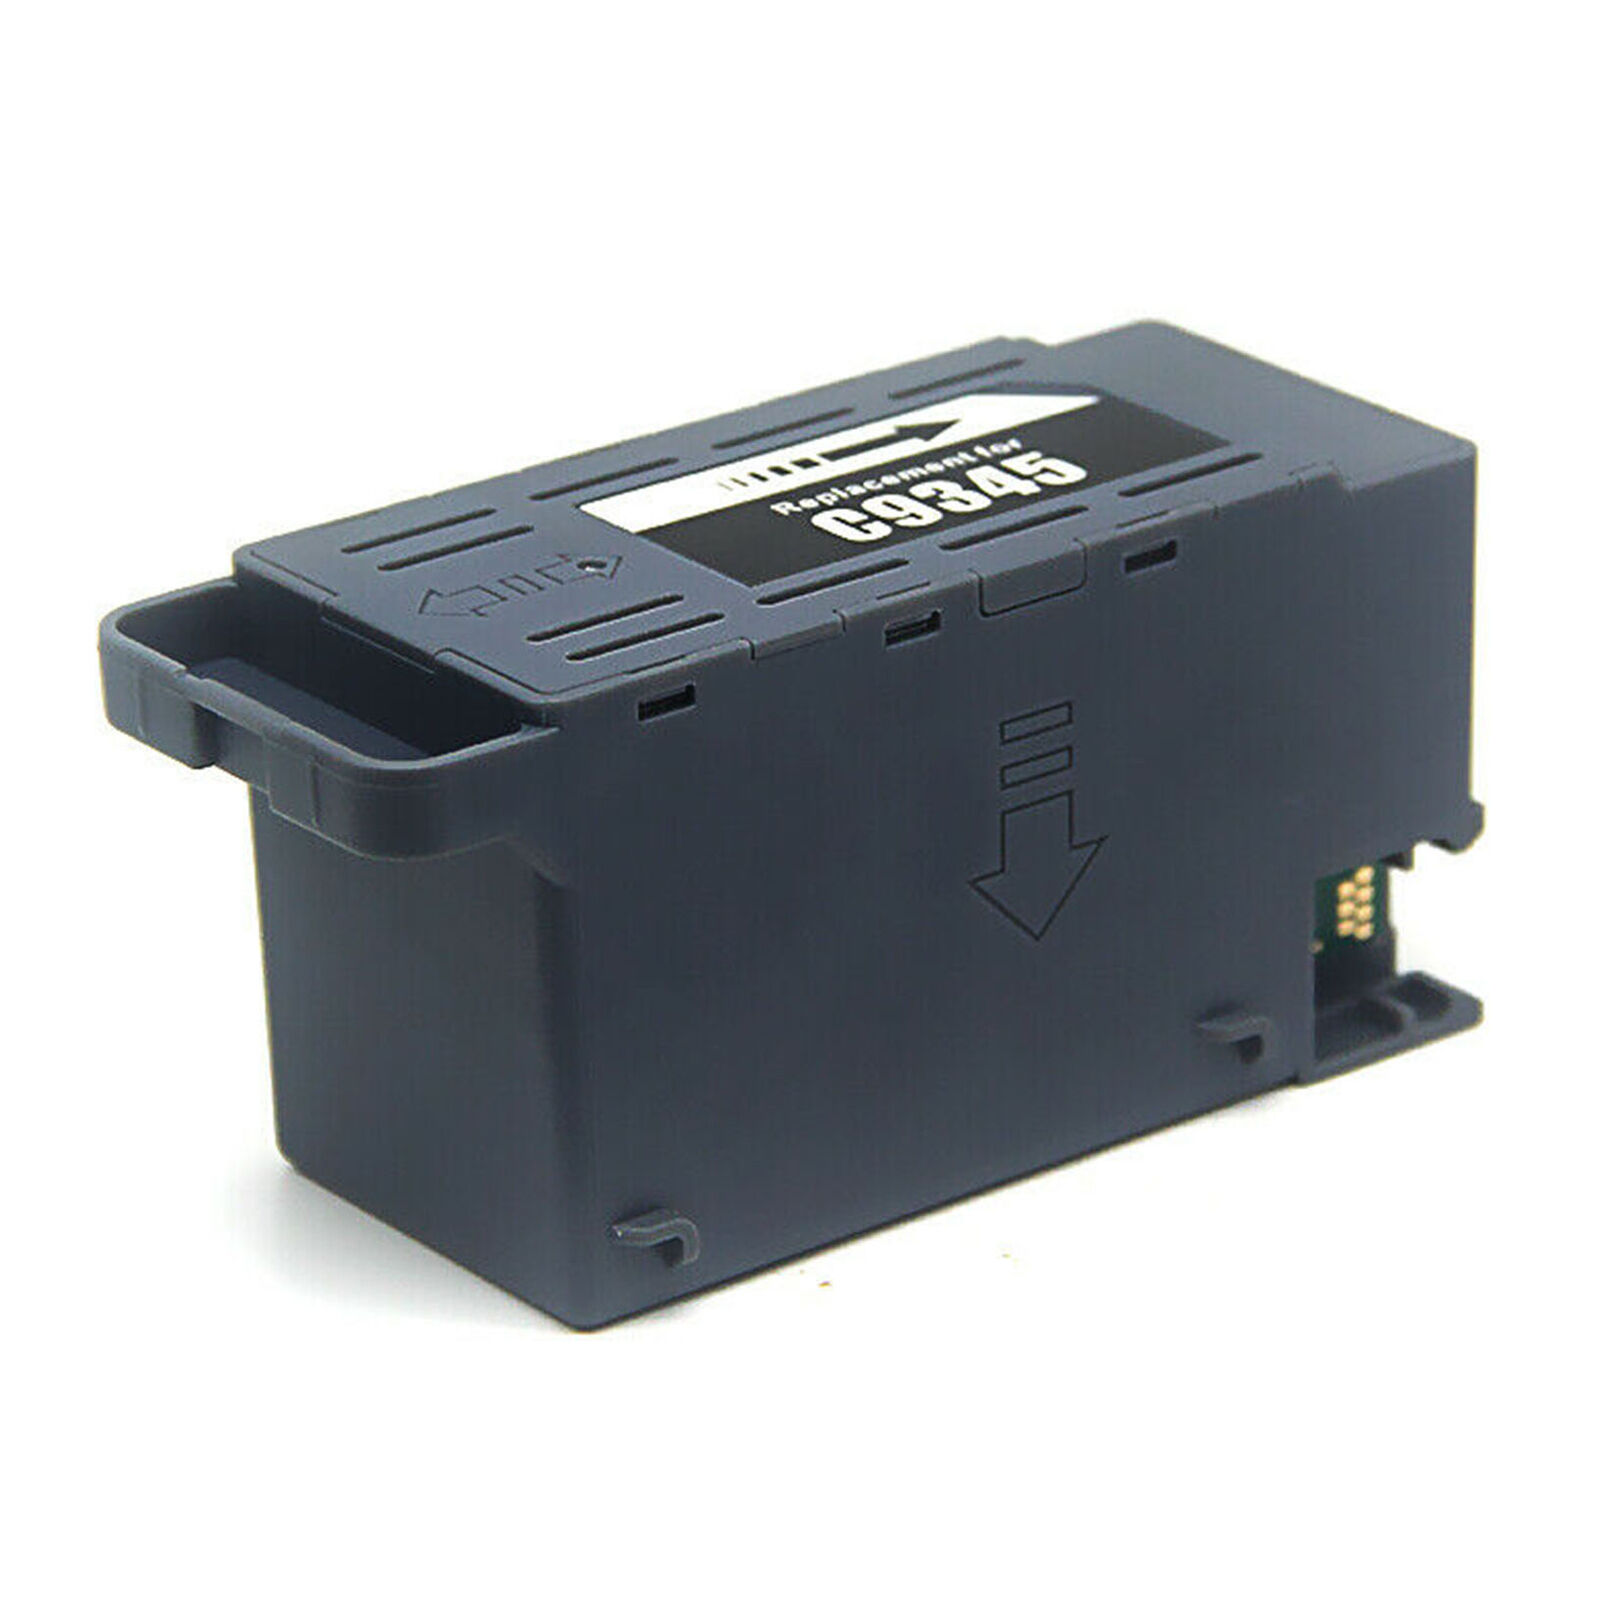 C9345 Maintenance Box for ET-16600, ET-16650, ET-5880, Pro WF-7840, WF-7820